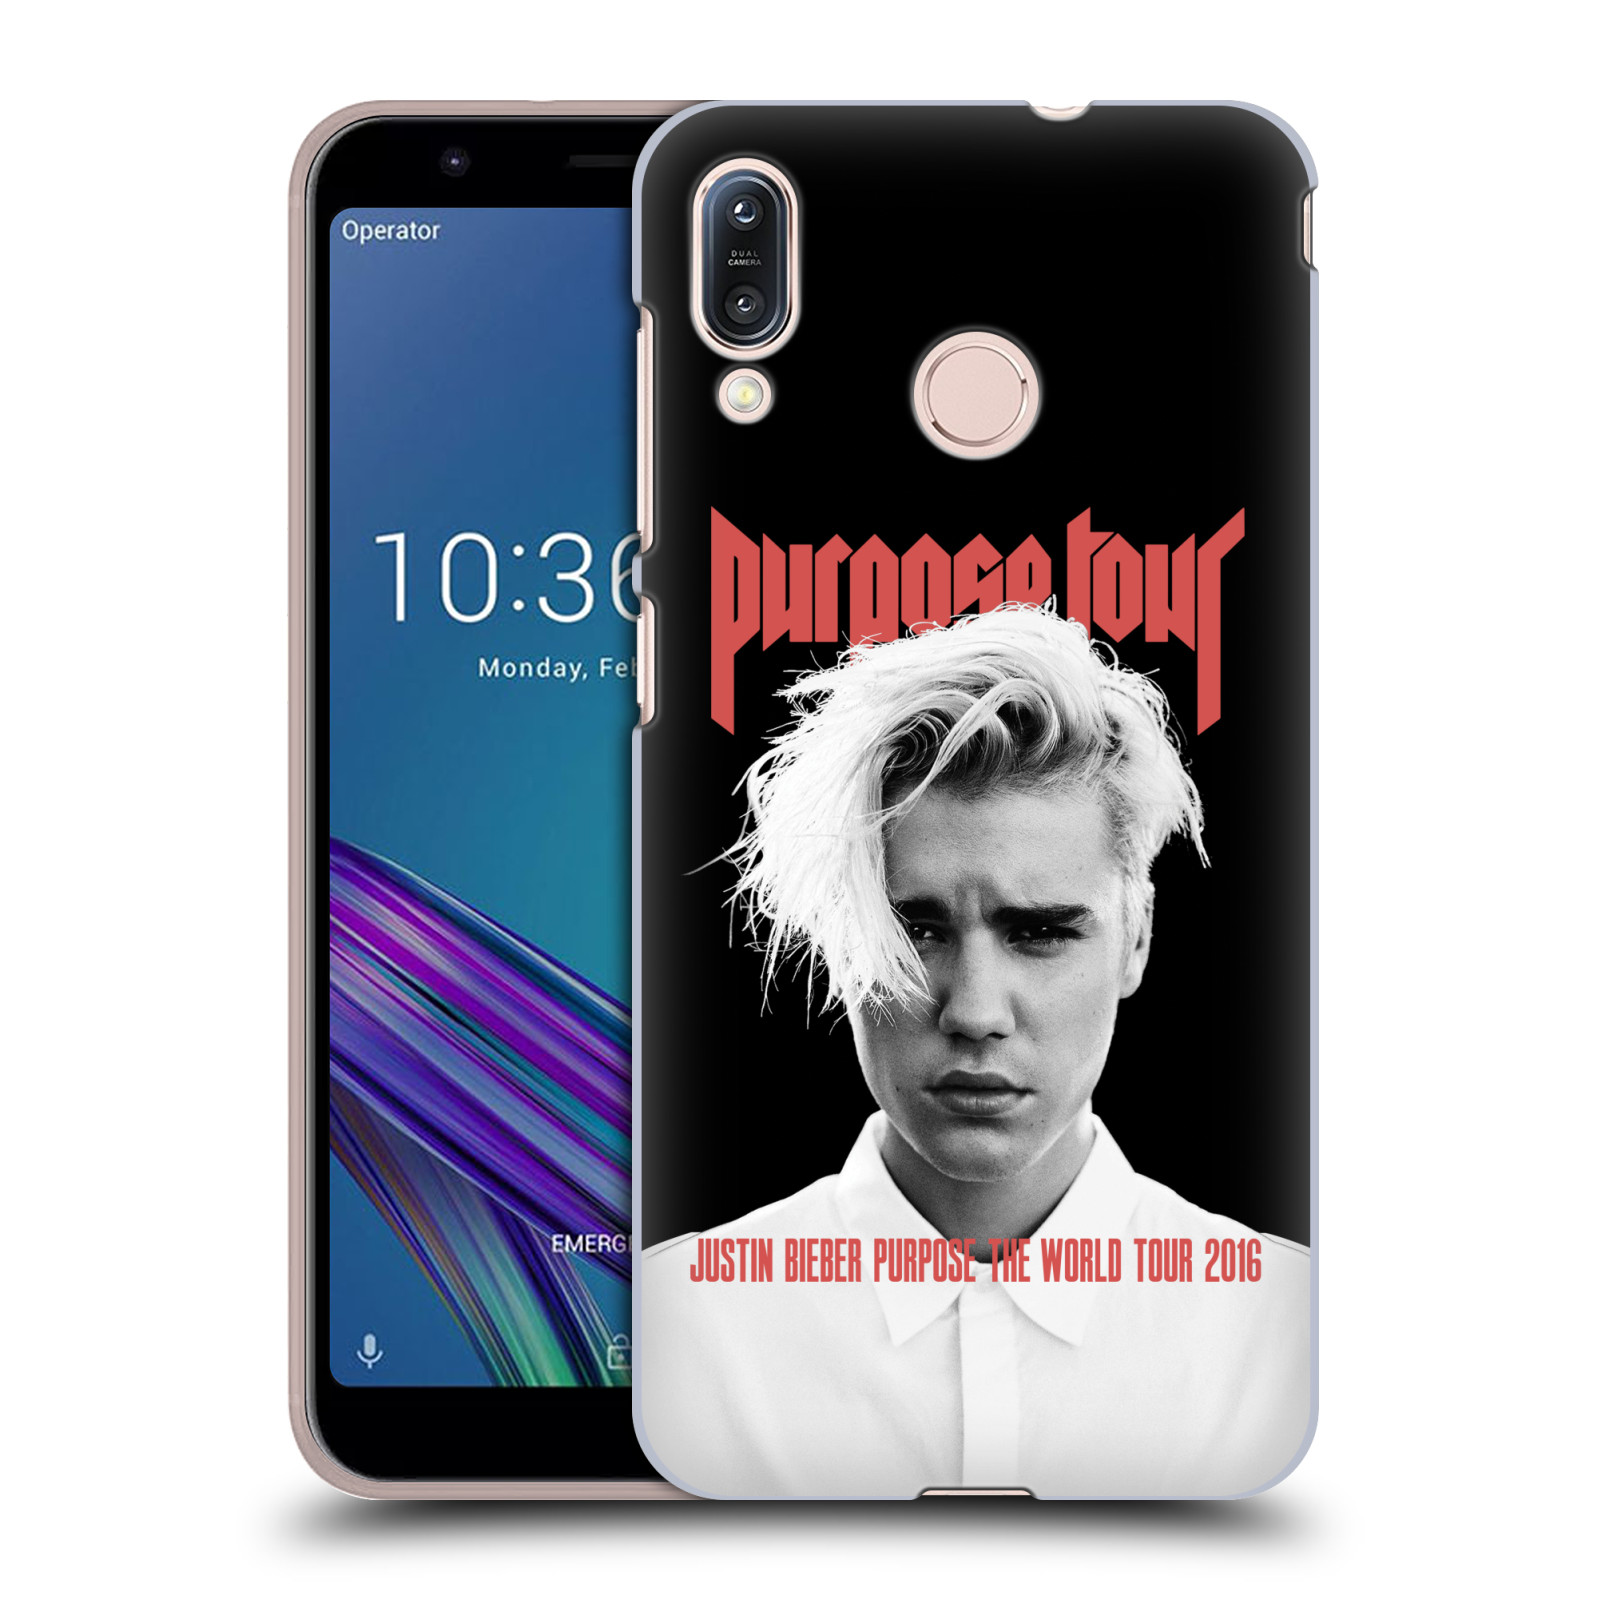 Pouzdro na mobil Asus Zenfone Max M1 (ZB555KL) - HEAD CASE - Justin Bieber foto Purpose tour černé pozadí